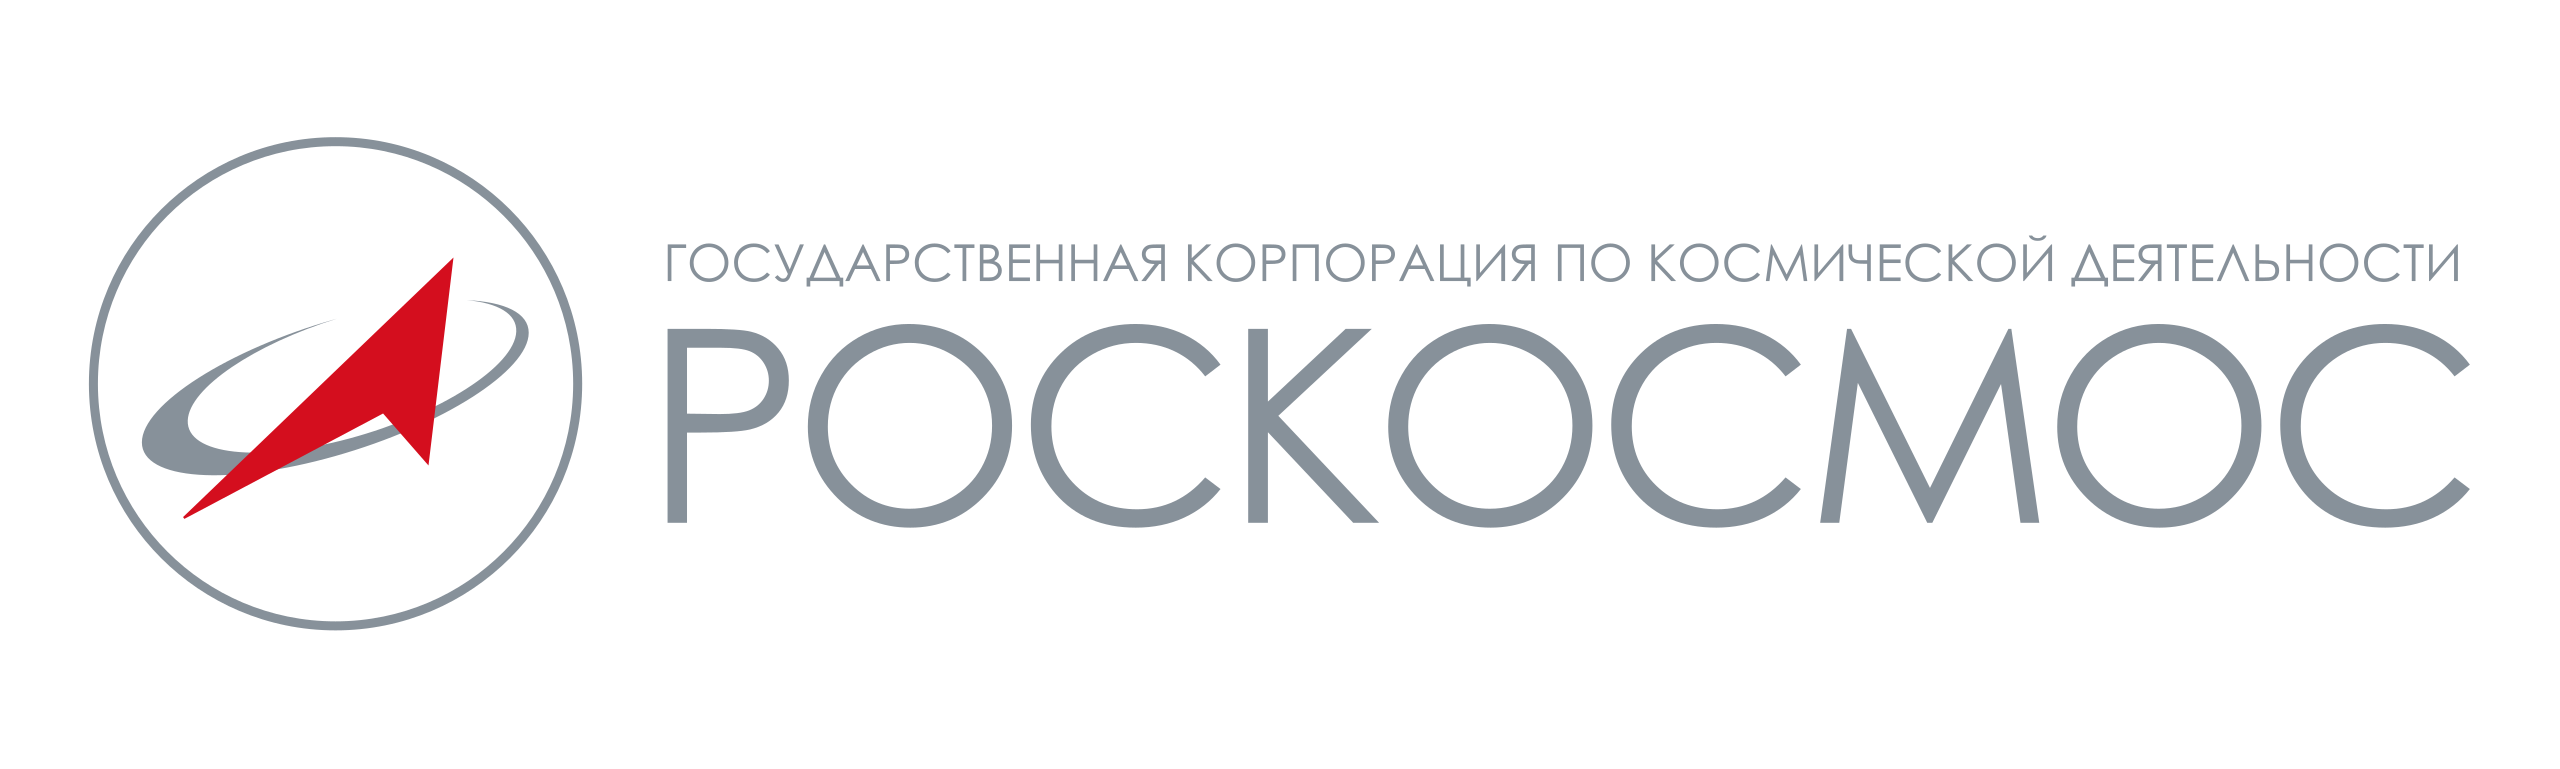 Сайт государственной корпорации. ГК Роскосмос логотип. Hjcc rjcvjc логотип. Государственная Корпорация Роскосмос. Российское космическое агентство логотип.